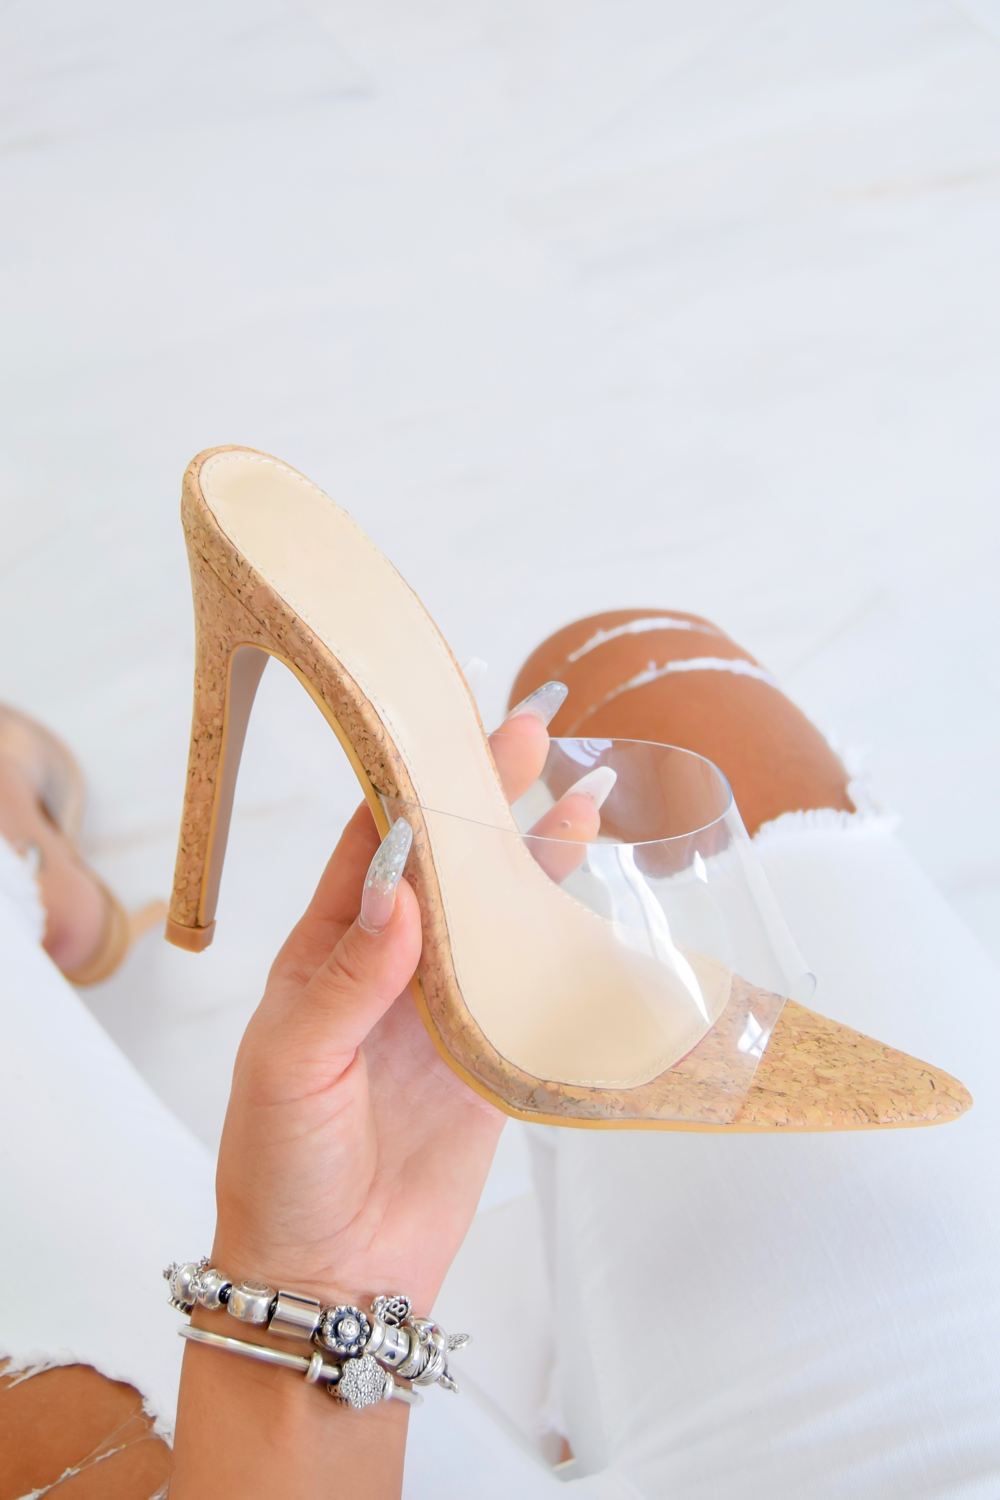 perspex cork heels